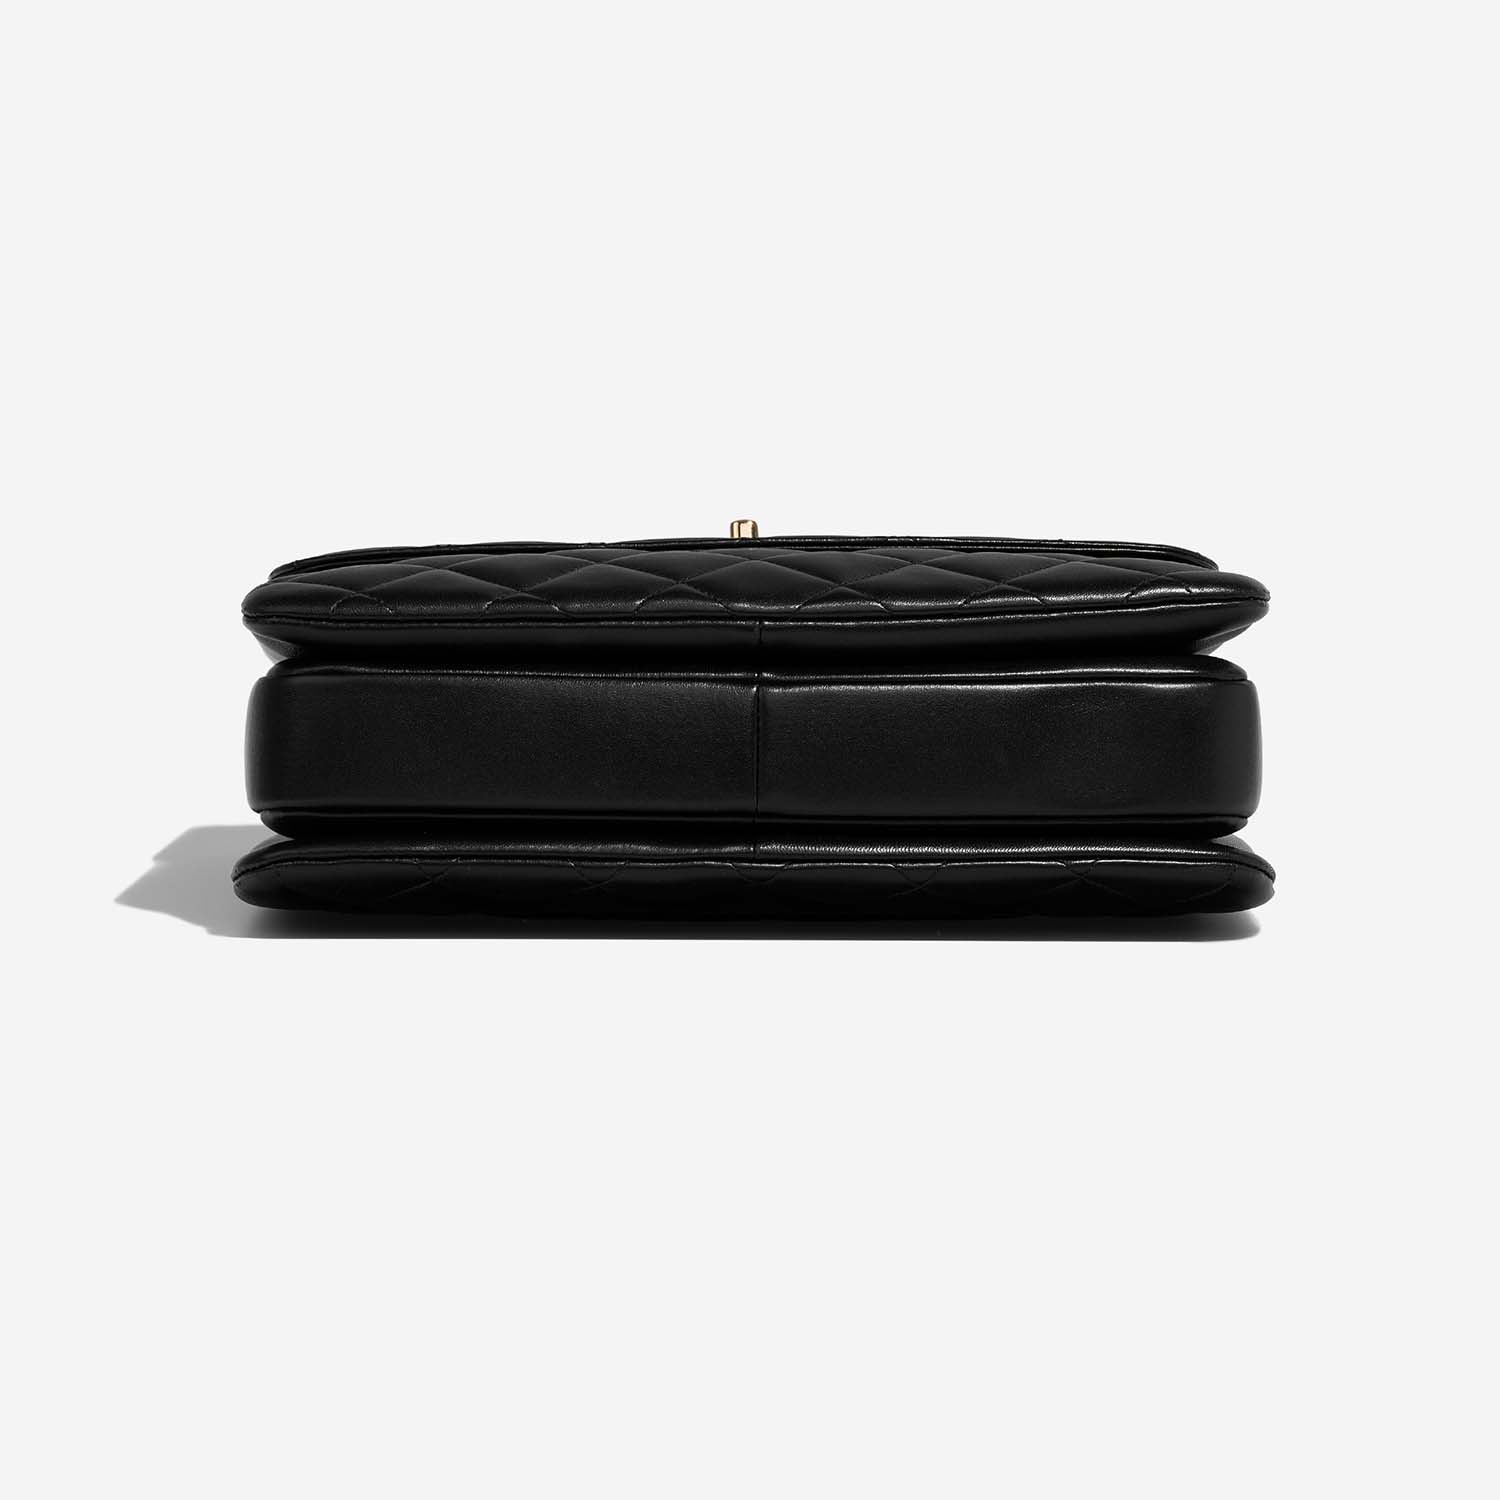 Chanel Trendy Large Black Bottom | Verkaufen Sie Ihre Designer-Tasche auf Saclab.com